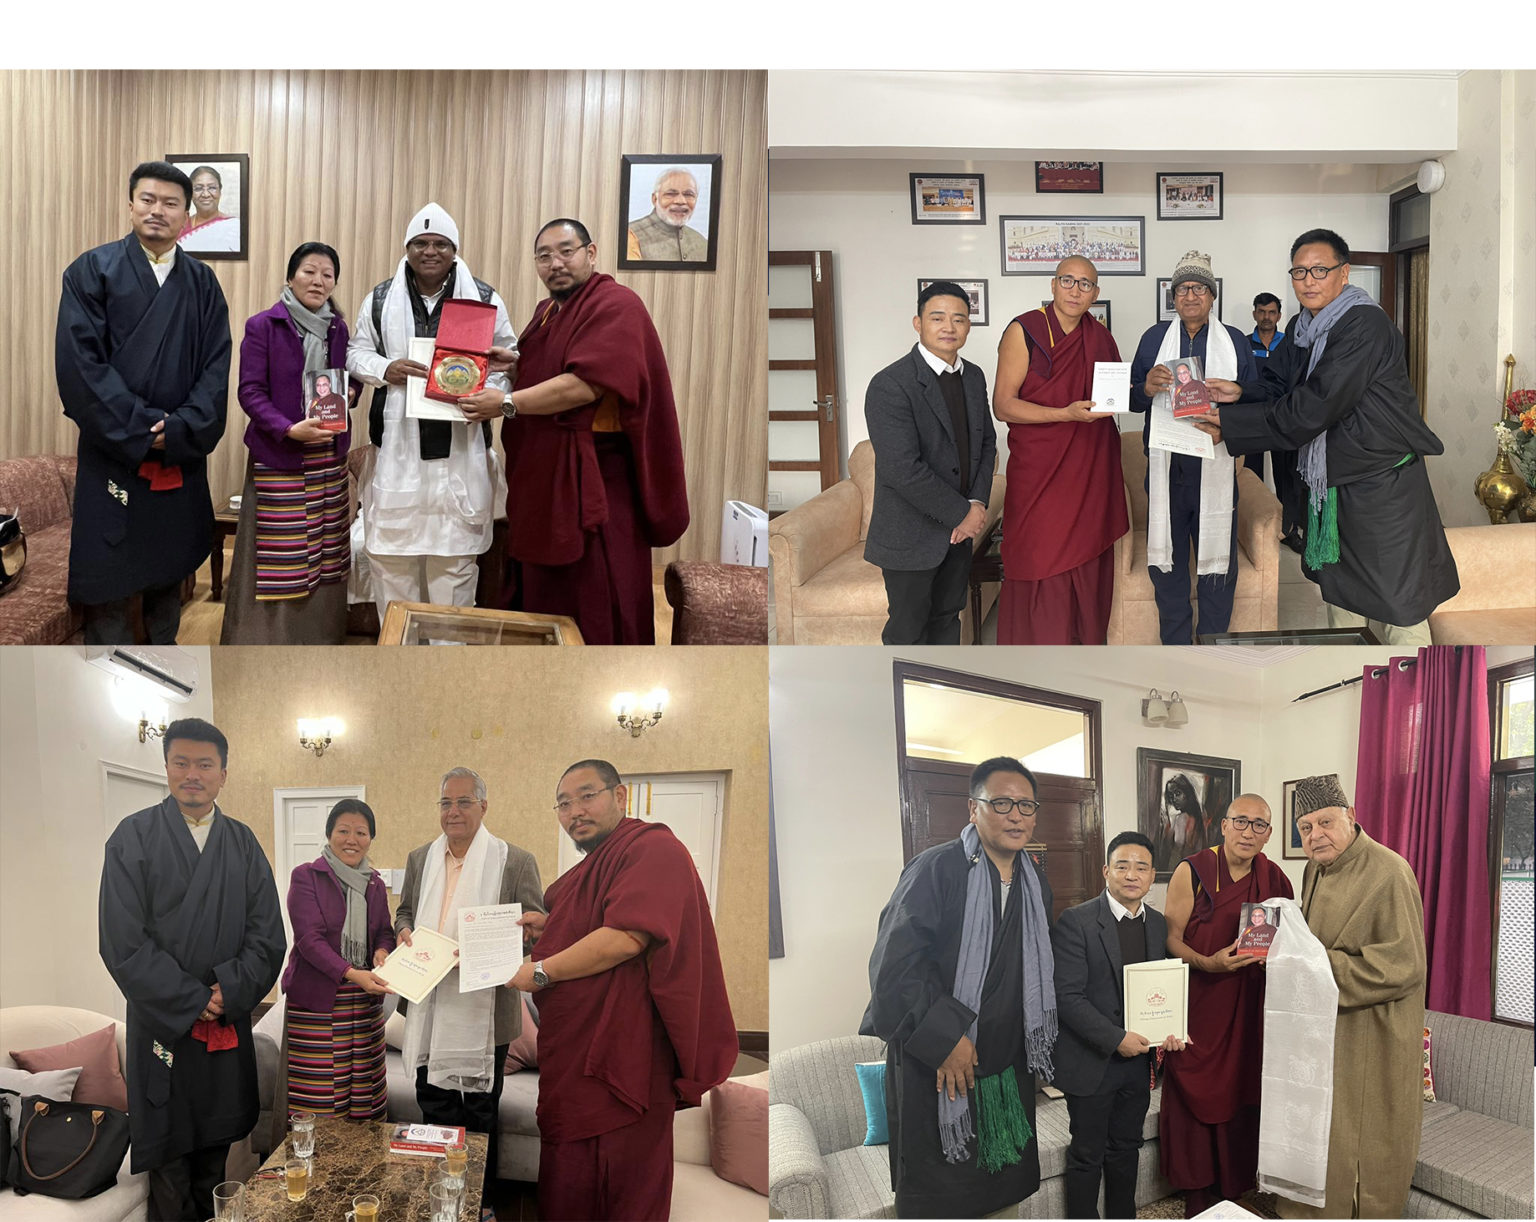 西藏人民议会议员代表团拜访印度政要吁重审“一中政策”